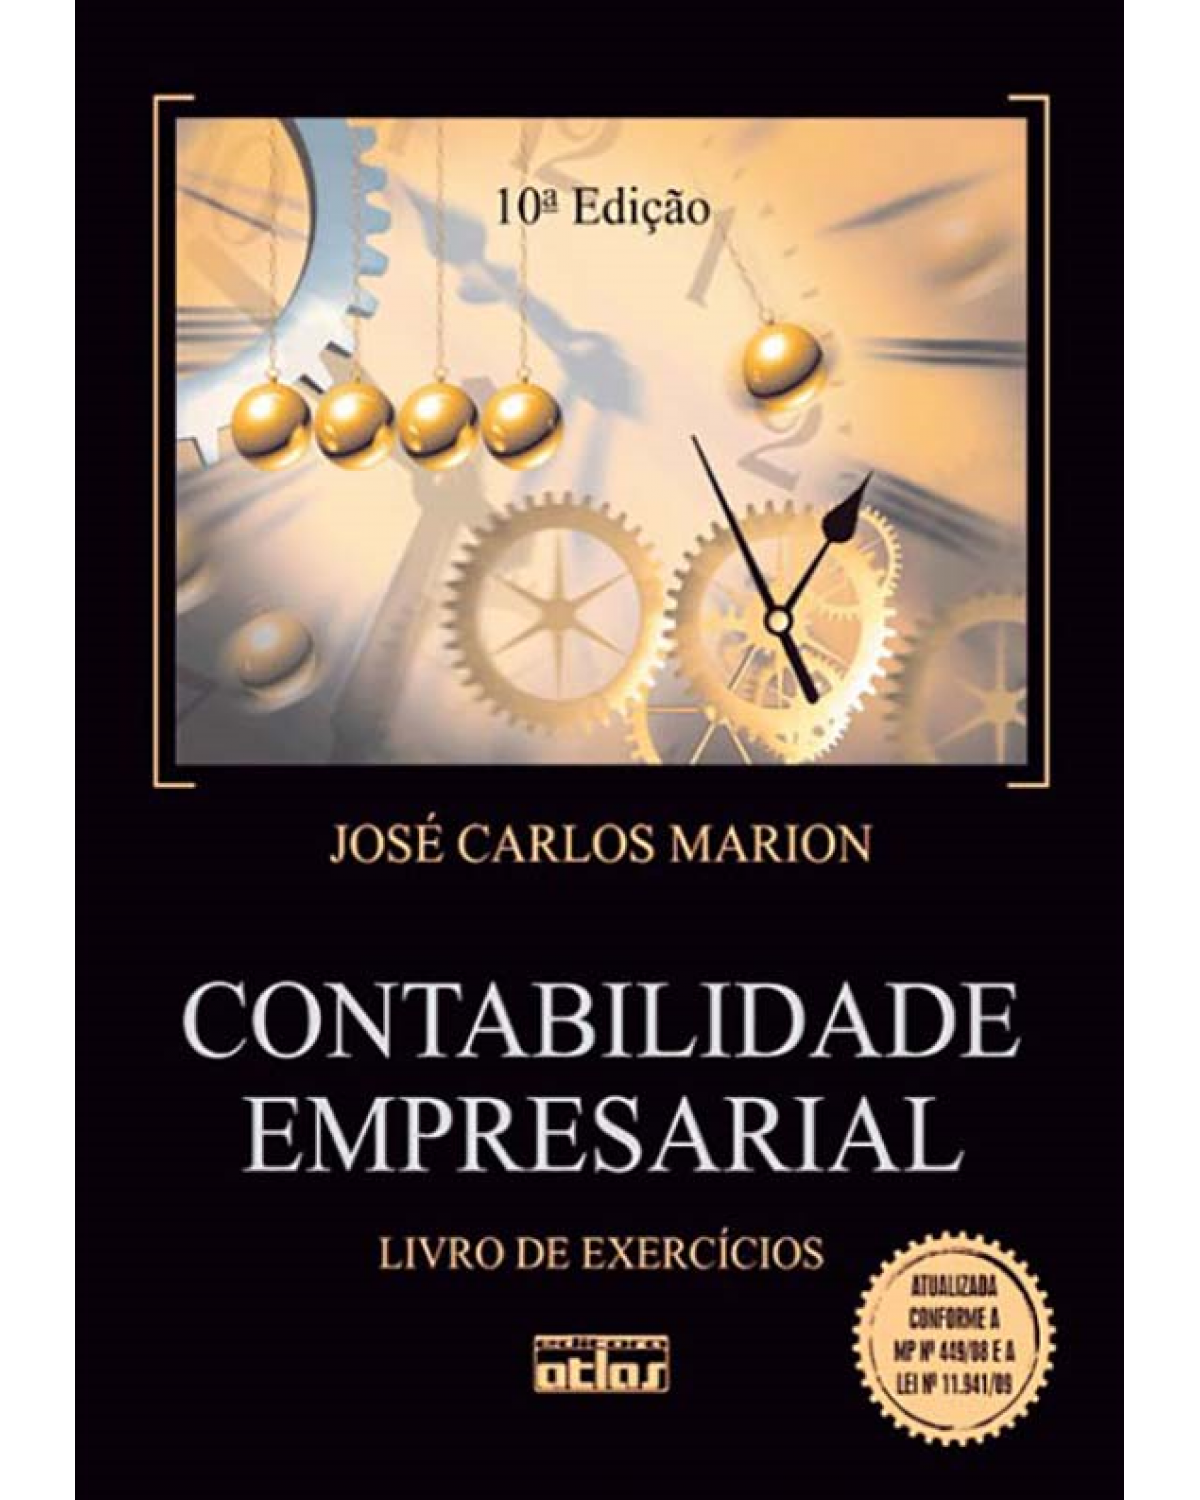 Contabilidade empresarial - Livro de exercícios - 10ª Edição | 2011